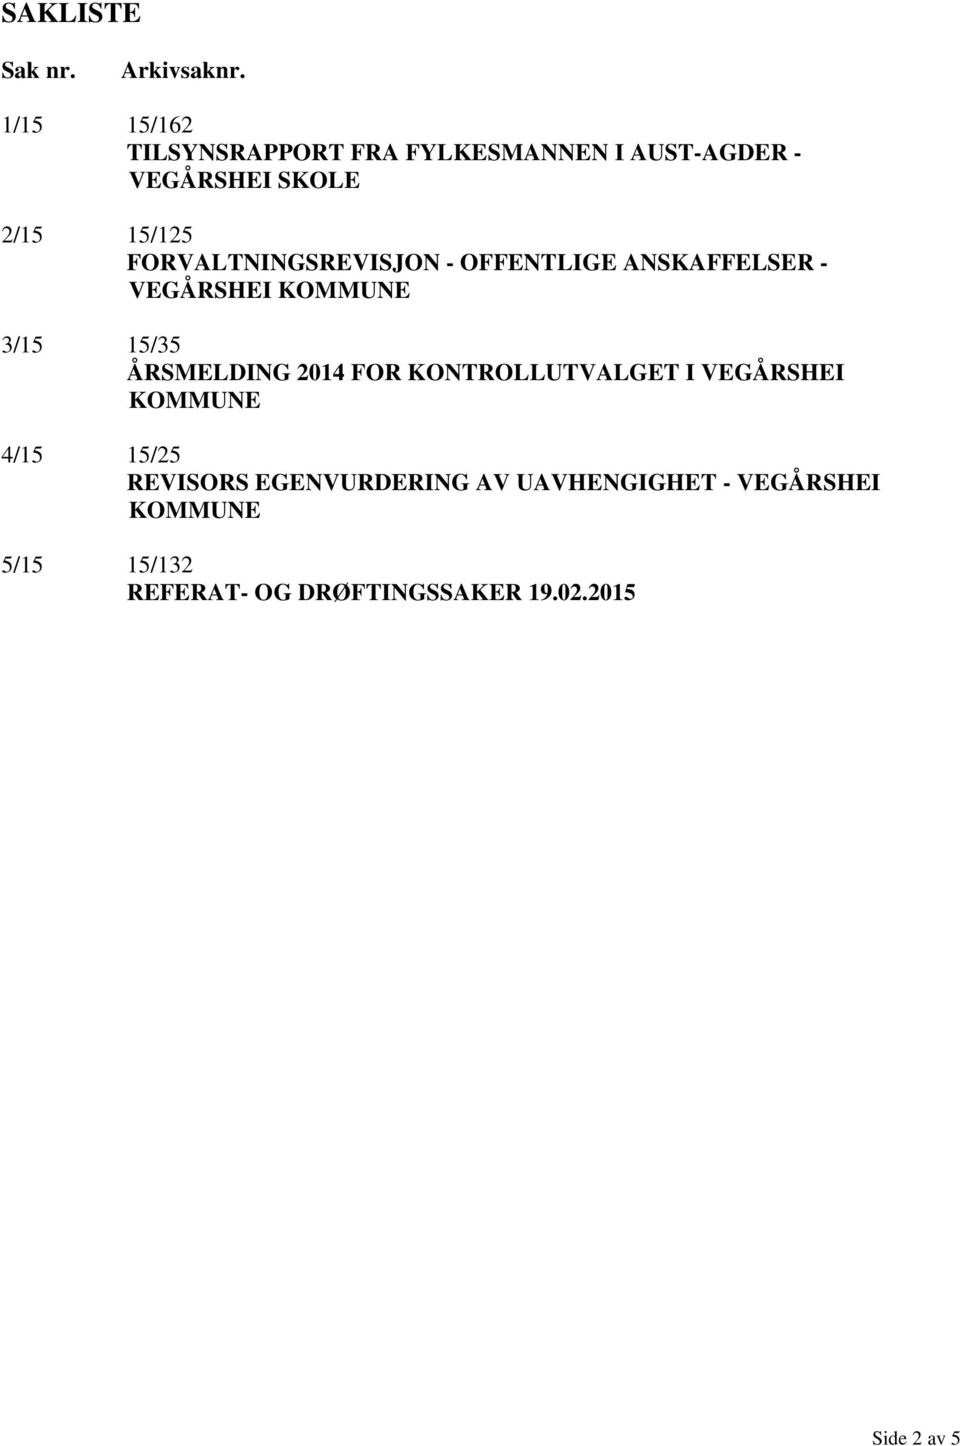 FORVALTNINGSREVISJON - OFFENTLIGE ANSKAFFELSER - VEGÅRSHEI 3/15 15/35 ÅRSMELDING 2014 FOR